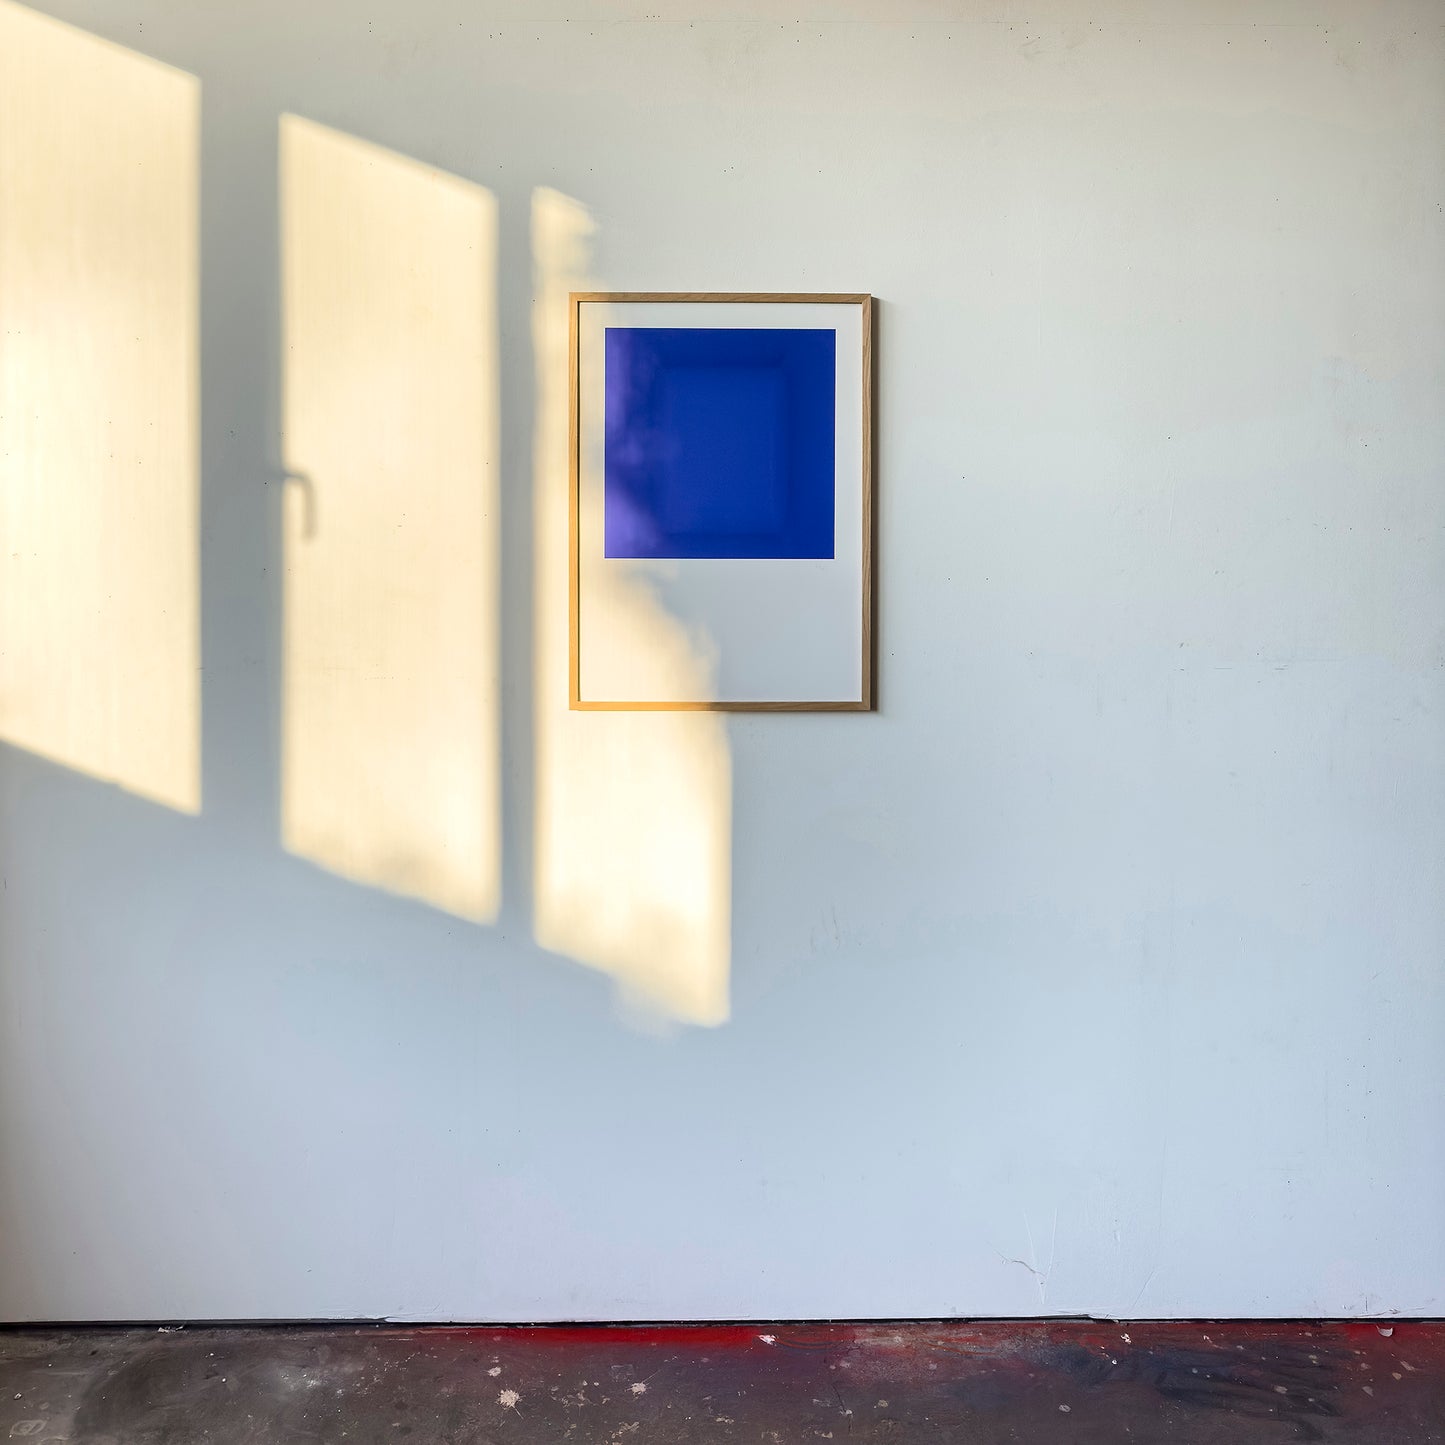 Kunstdruck im Bilderrahmen im Atelier, Motiv blau monochromer Raum, Titel IKB III - Edition